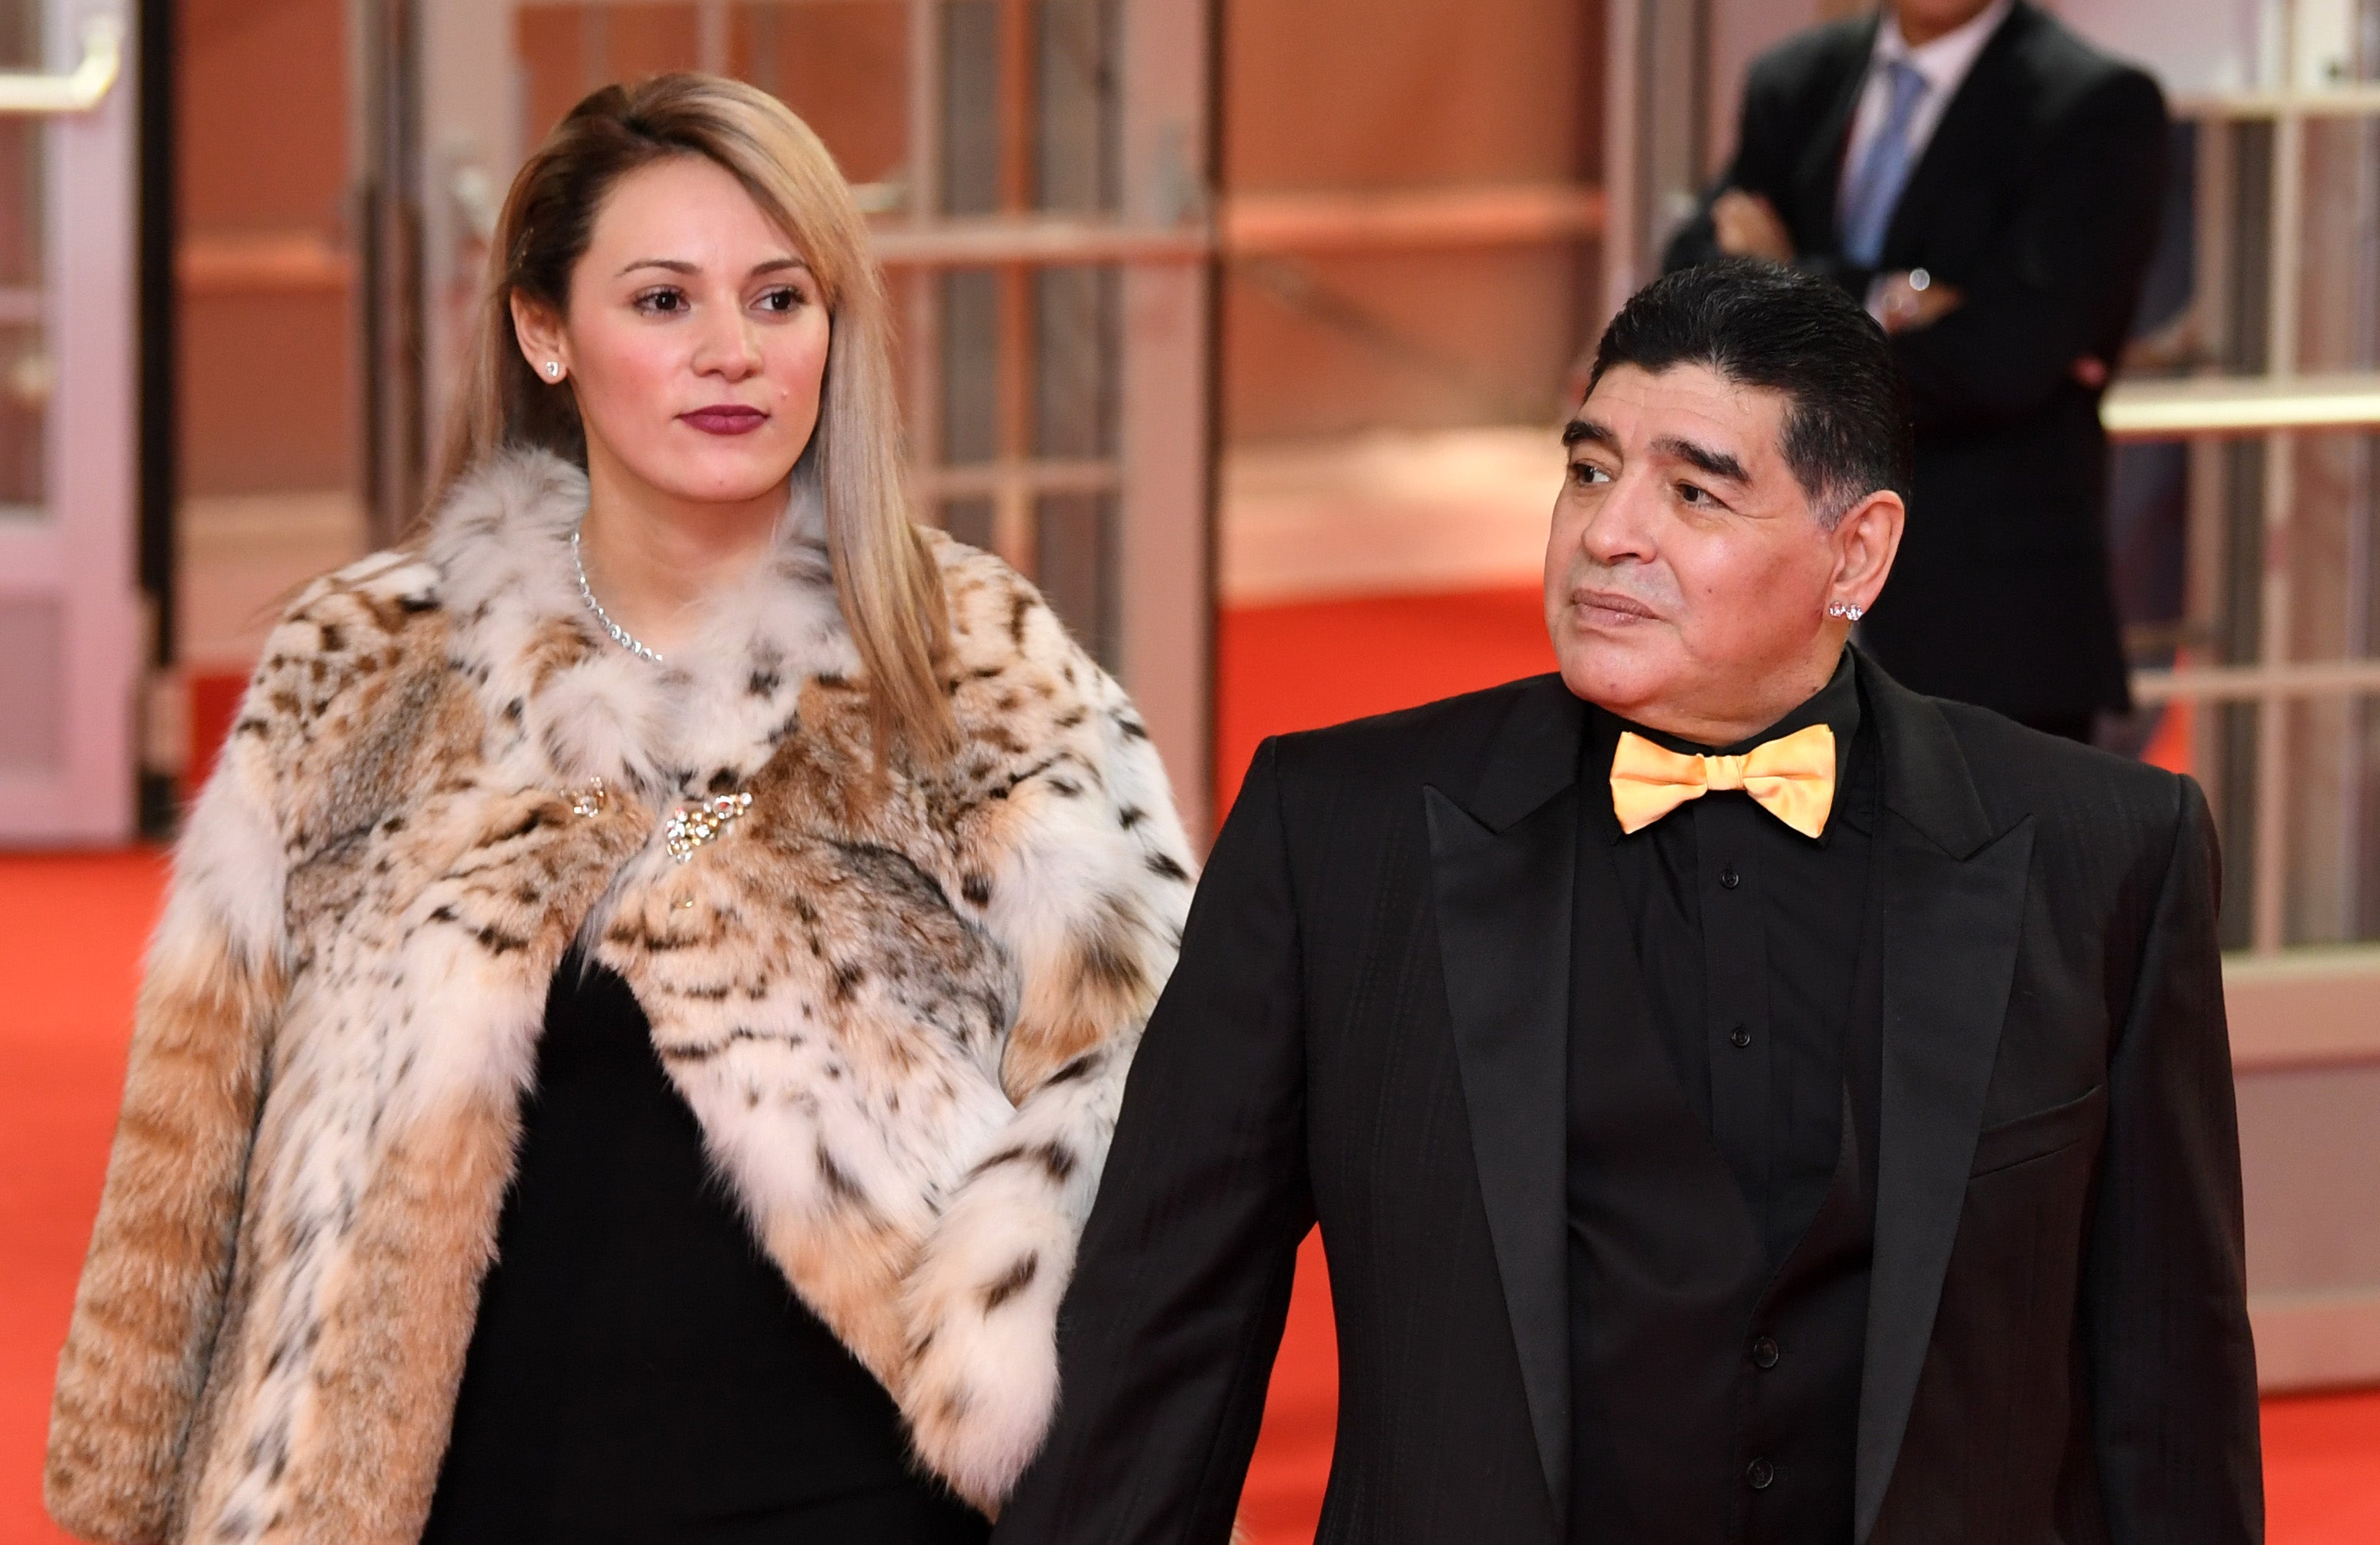 MOSCÚ, RUSIA - DICIEMBRE 01: El asistente del sorteo, Diego Maradona y su novia Rocío Oliva llega antes del Sorteo Final de la Copa Mundial de la FIFA Rusia 2018 al Palacio del Kremlin Estatal el 1 de diciembre de 2017 en Moscú, Rusia.